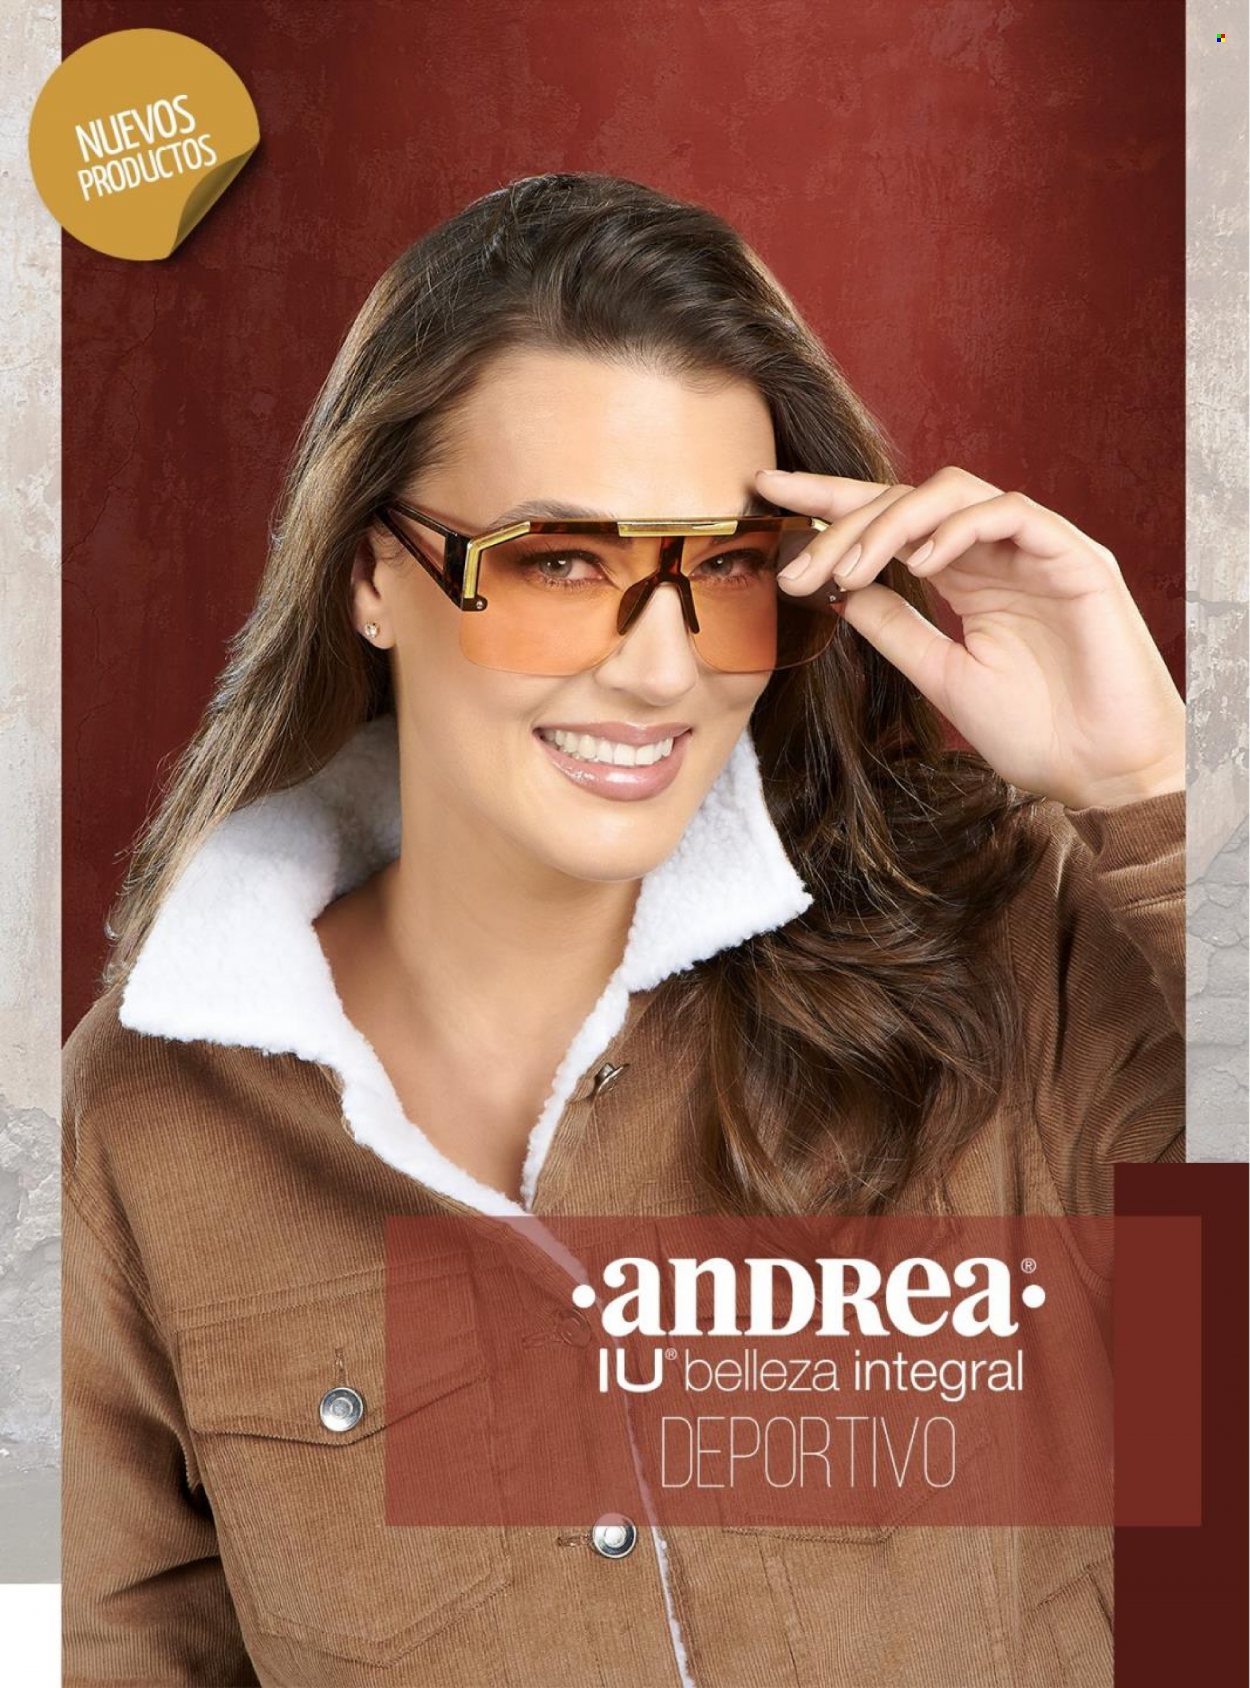 Catálogo Andrea.